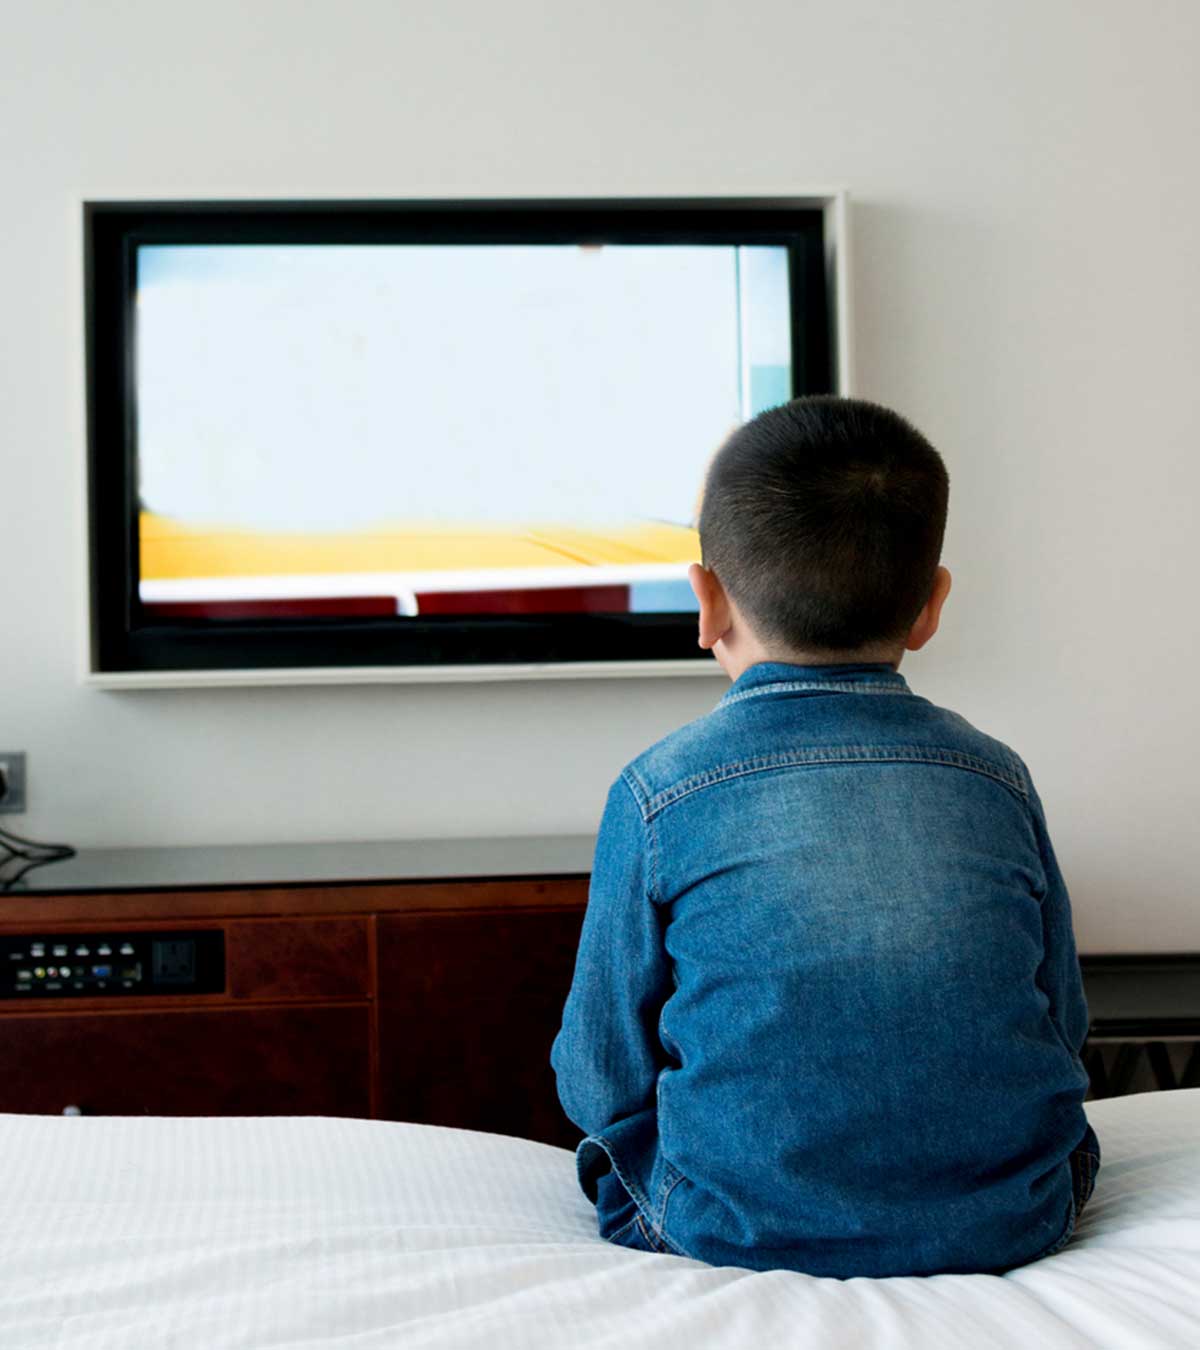 શું તમારા બાળકને ટીવી જોવાની આદત પડી ગઈ છે? તો ચેતી જજો